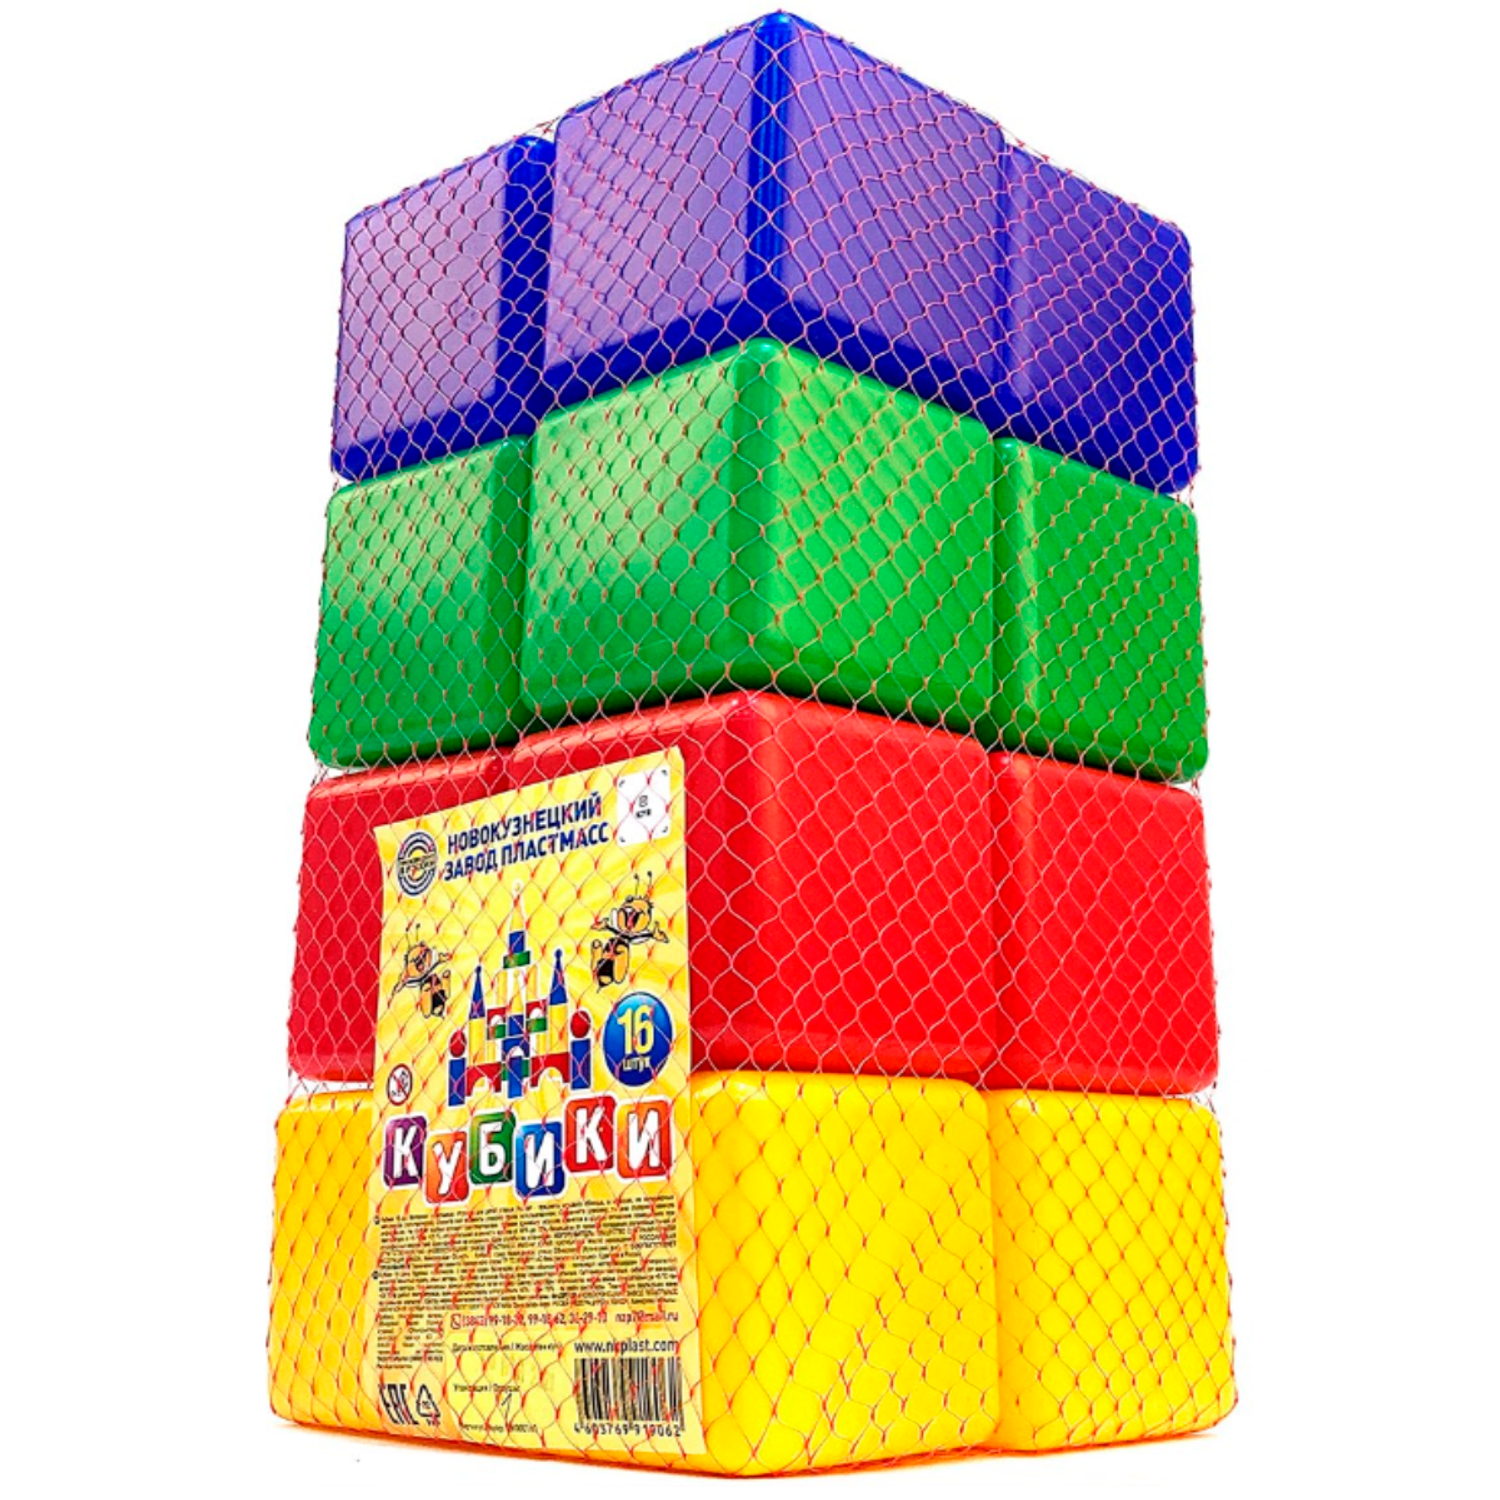 Игровой набор для детей Новокузнецкий Завод Пластмасс Кубики цветные развивающие 16 шт - фото 5